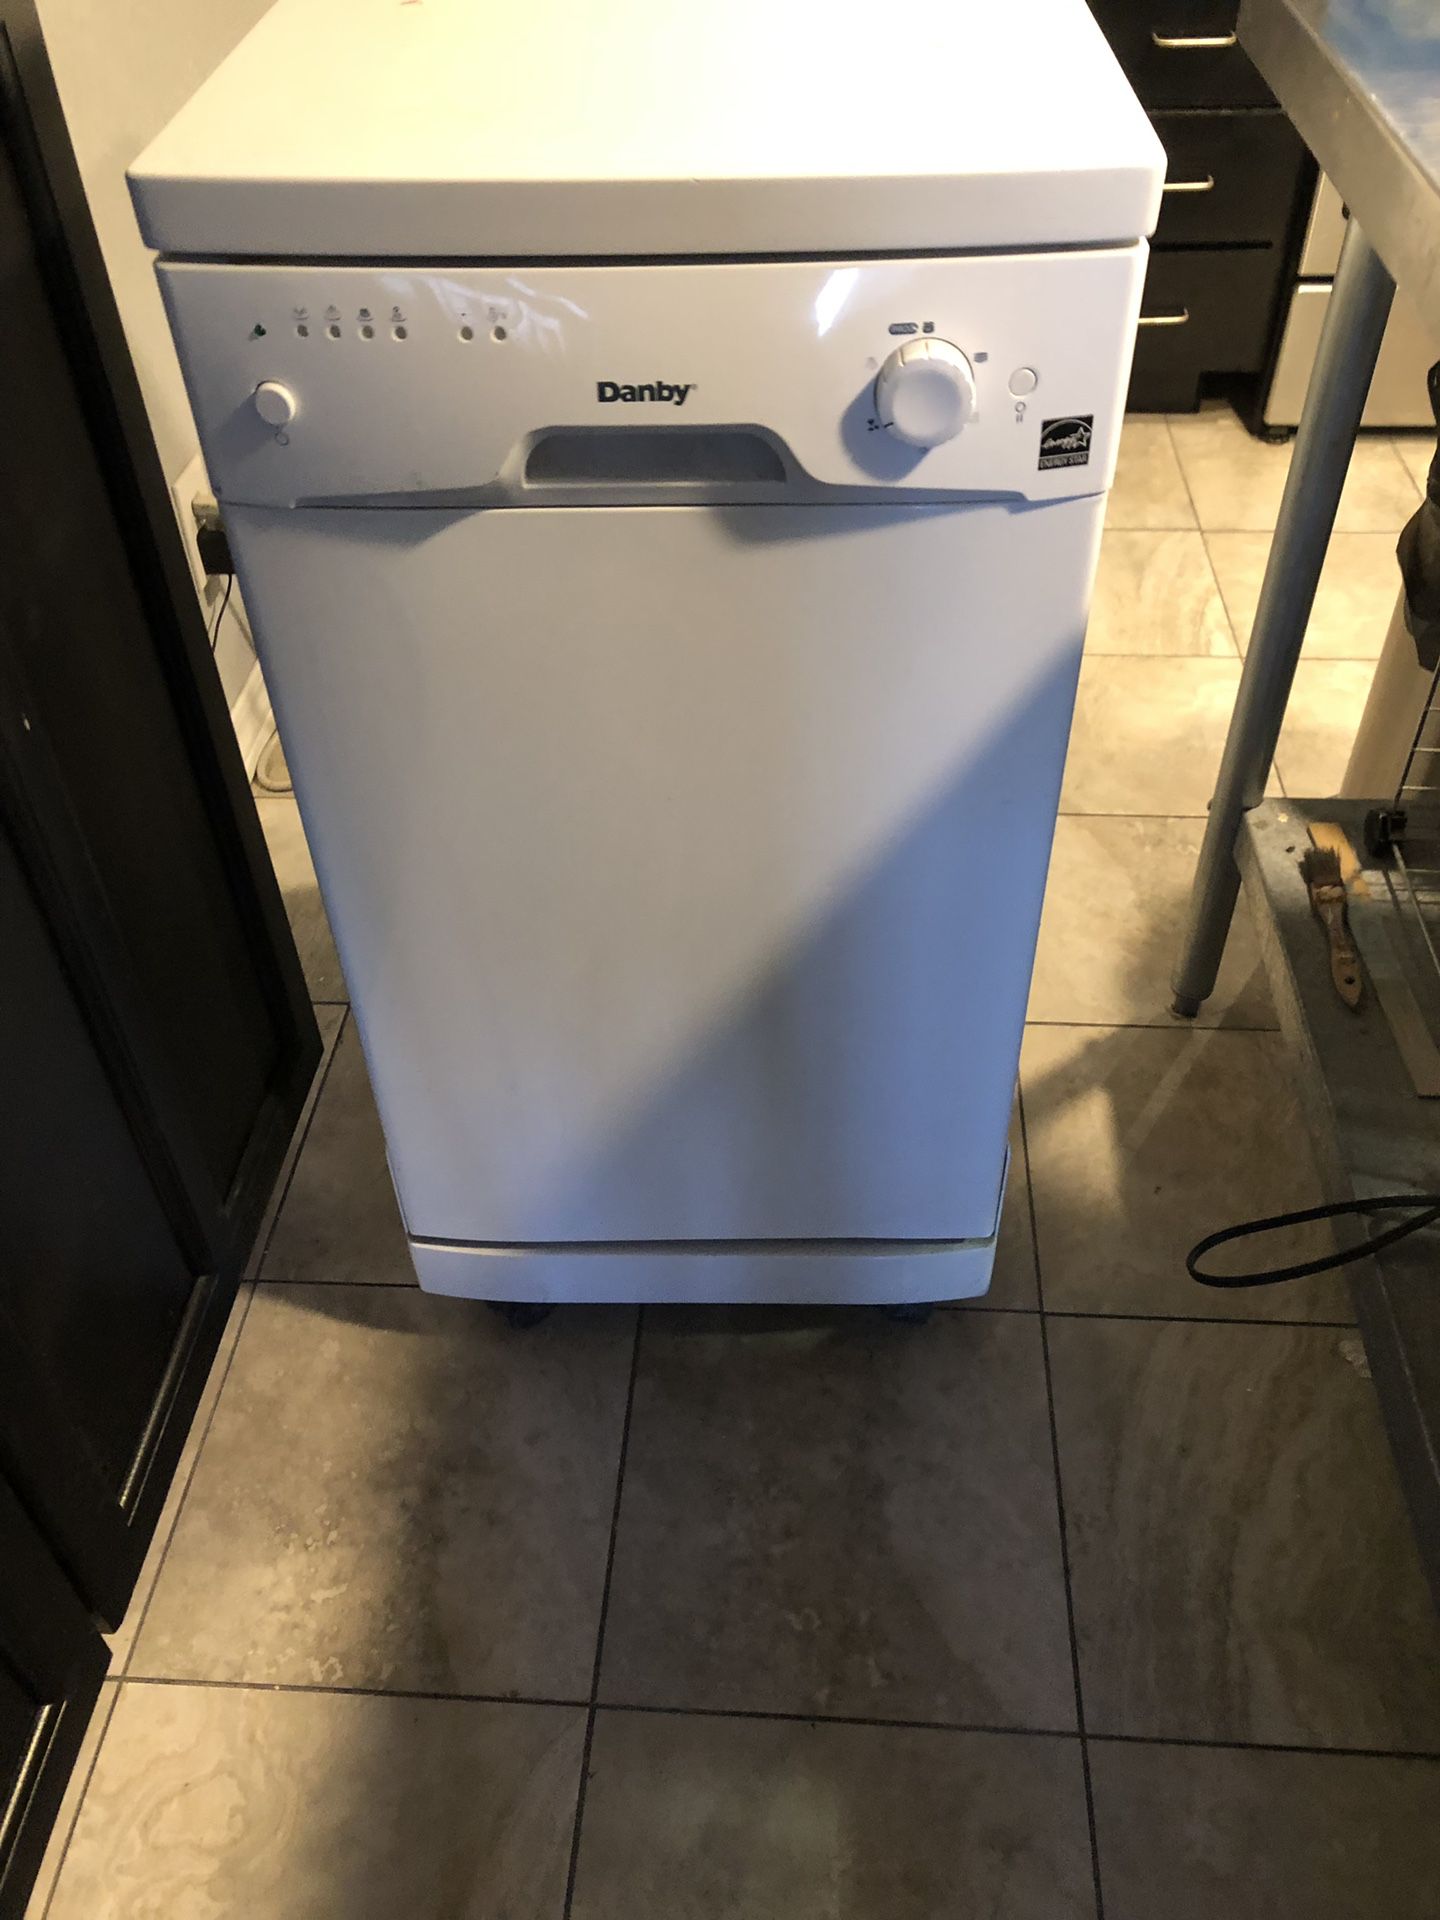 Danby portable dishwasher